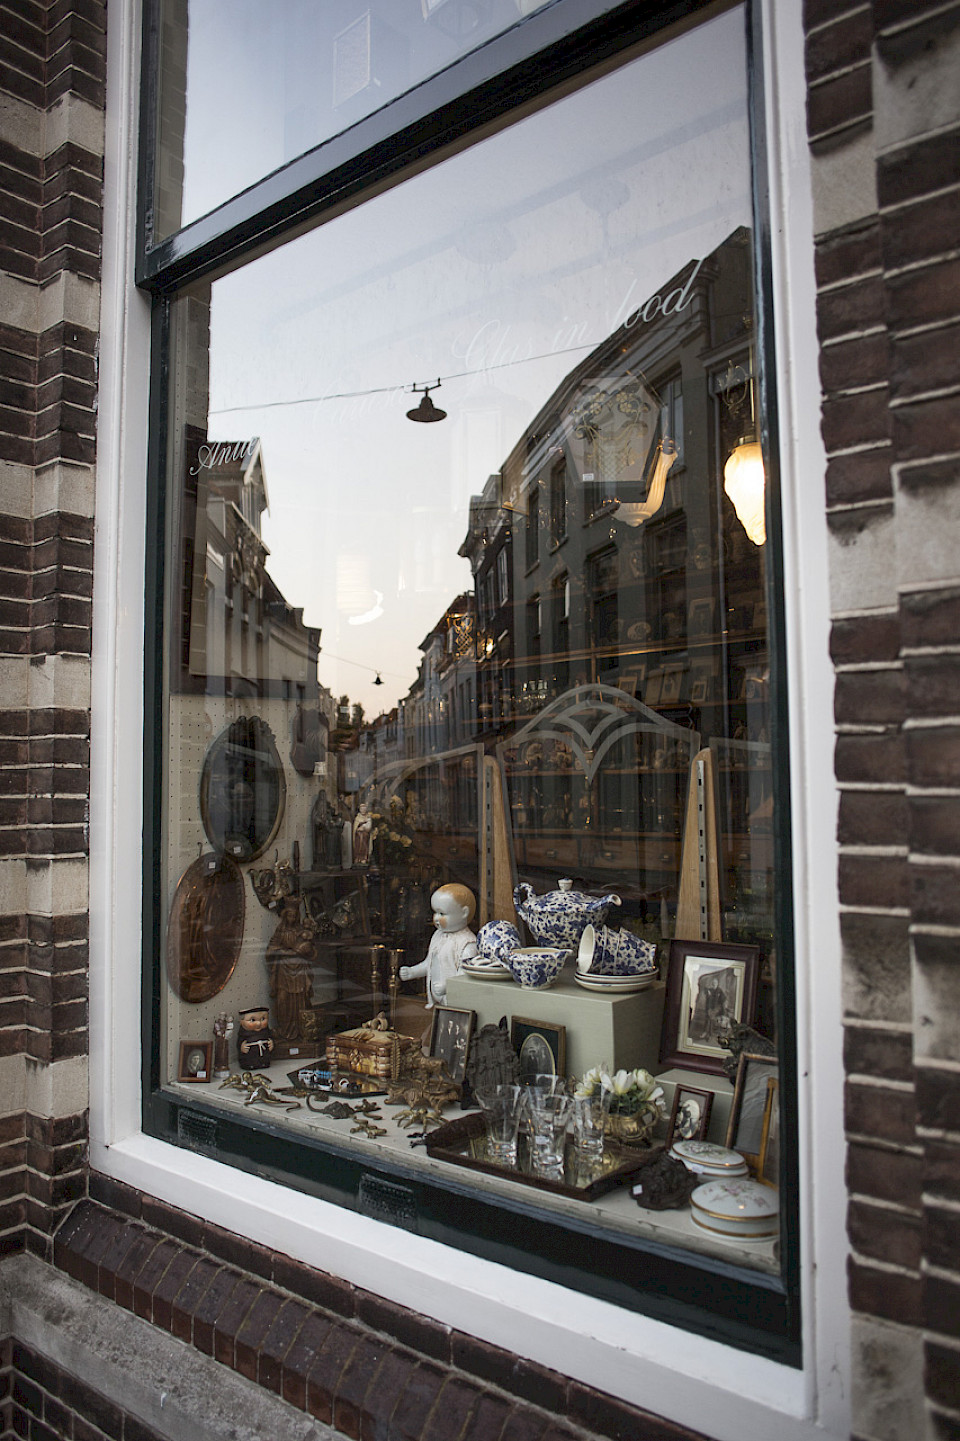 In den Nachkriegsjahren wurde die Stadt wieder aufgebaut. Mit den verbliebenen Stadtchroniken und Archiven unternahm man den Versuch, das zerstörte Middelburg so detailgetreu wie möglich zu restaurieren. Antiquitäten De Swarte Leeuw, Lange Noordstraat.